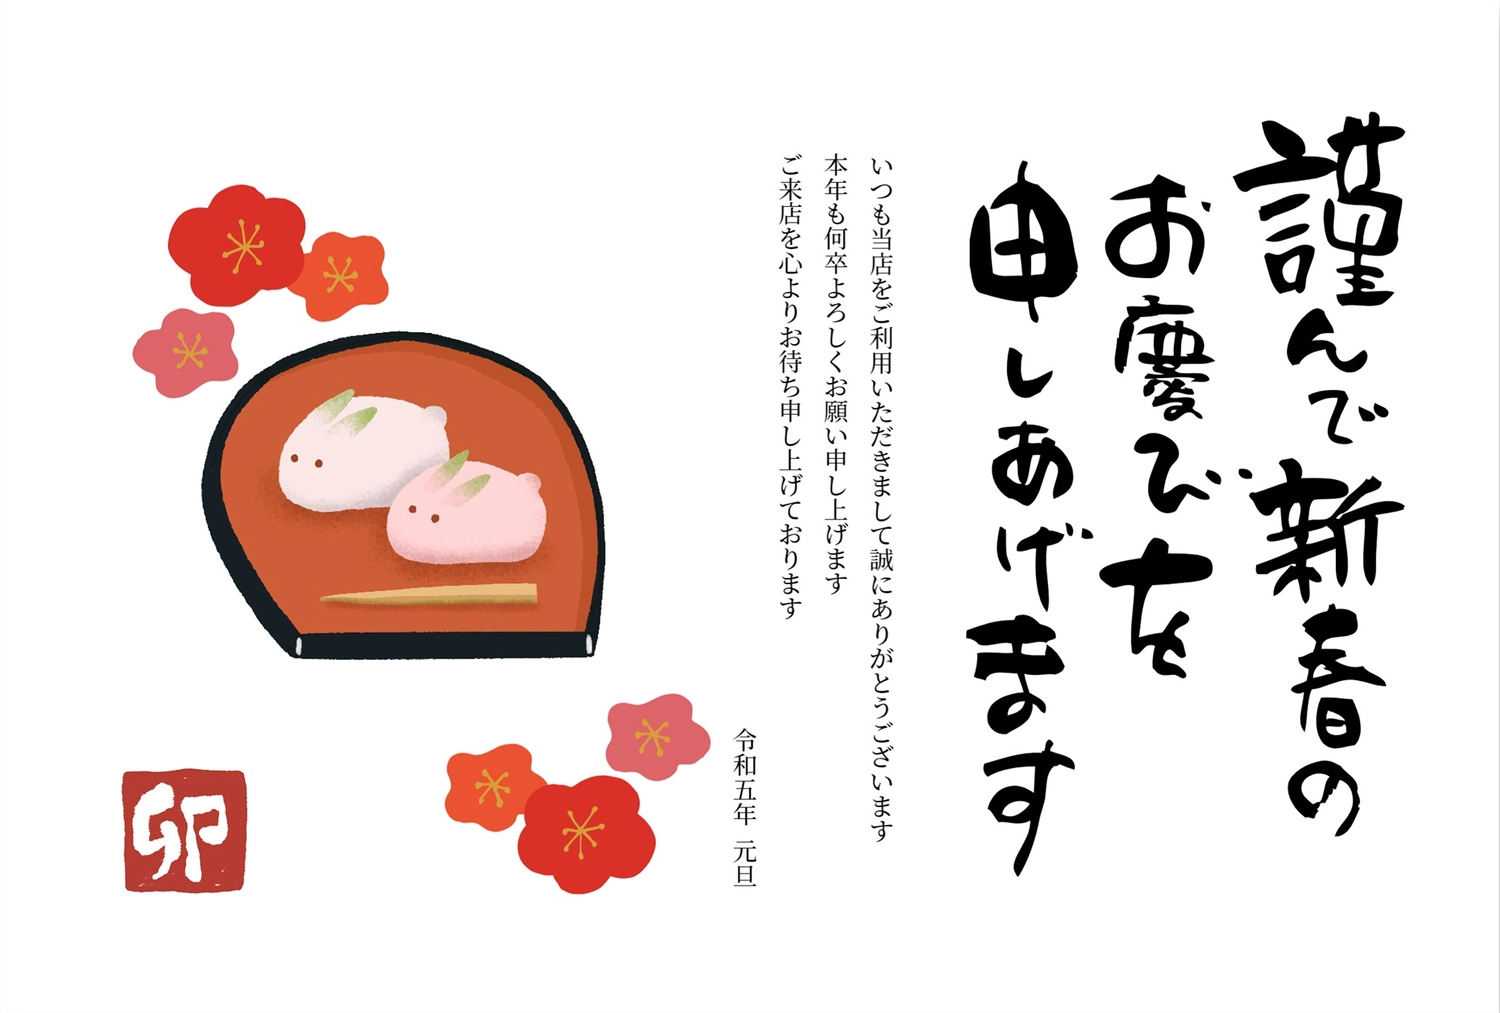 年賀状　うさぎのおまんじゅうと梅, chopsticks, manjuu, steamed yeast bun with filling, New Year Card template